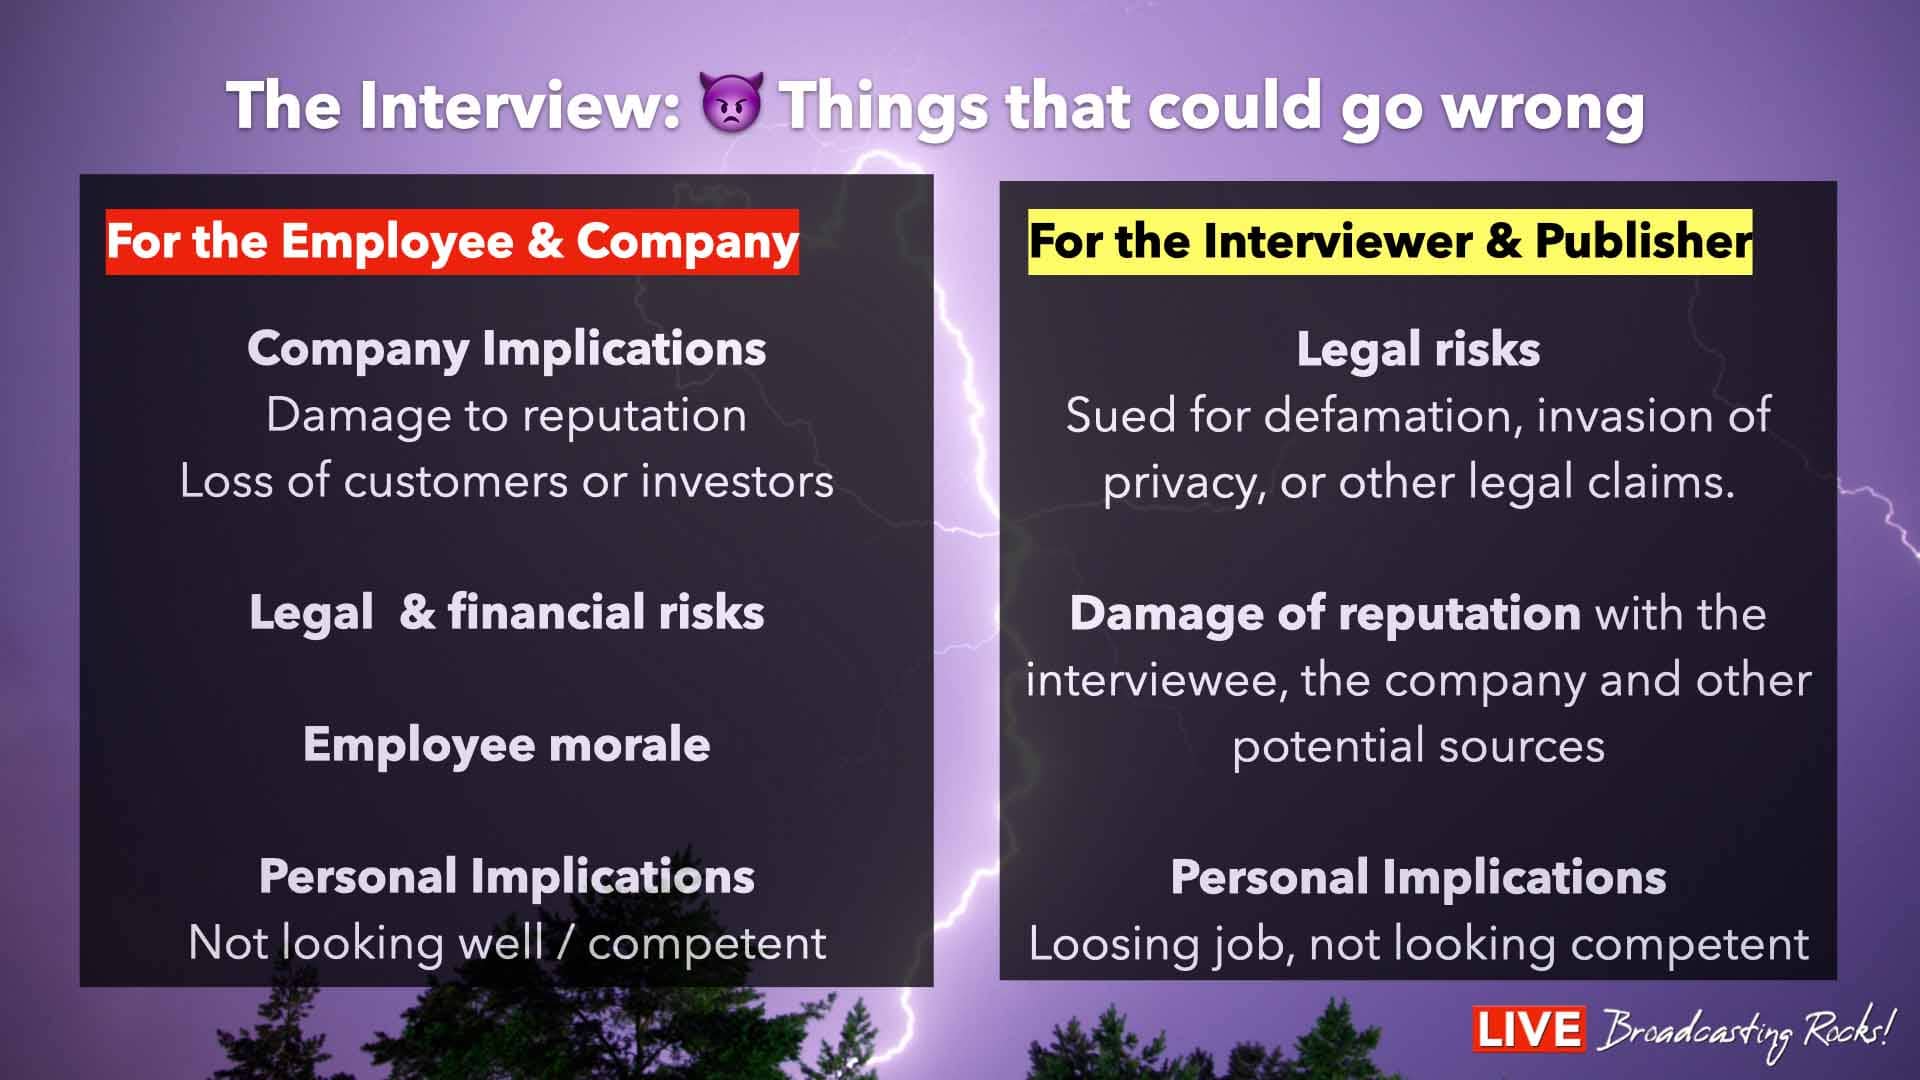 Wenn ein Interview schief geht, kann es auch verschiedene Risiken für ein Unternehmen und den Journalisten mit sich bringen. Hier sind einige der potenziellen Risiken